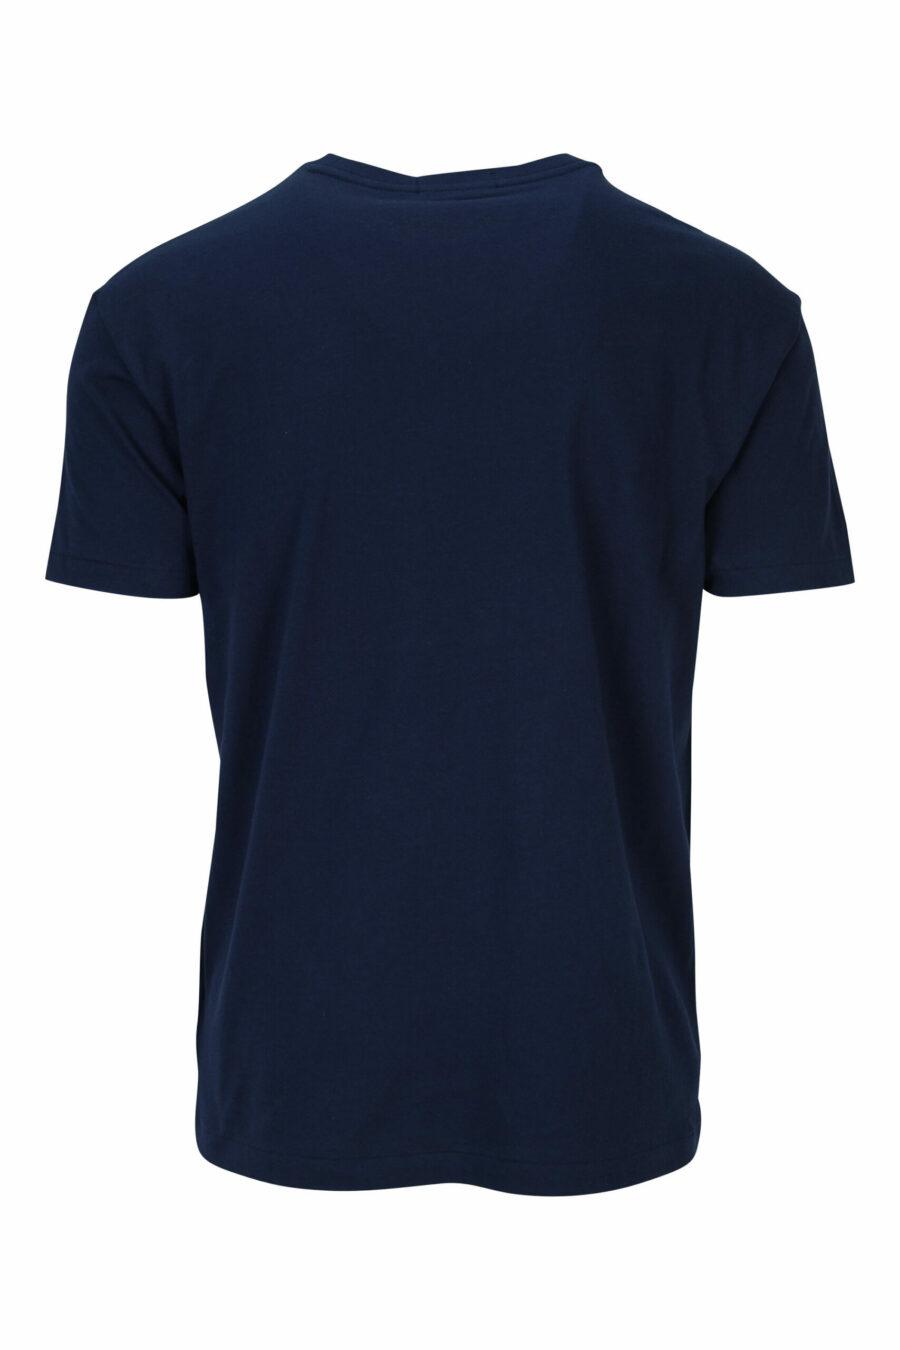 Camiseta azul oscuro con maxilogo "polo" blanco - 3616535909311 1 scaled